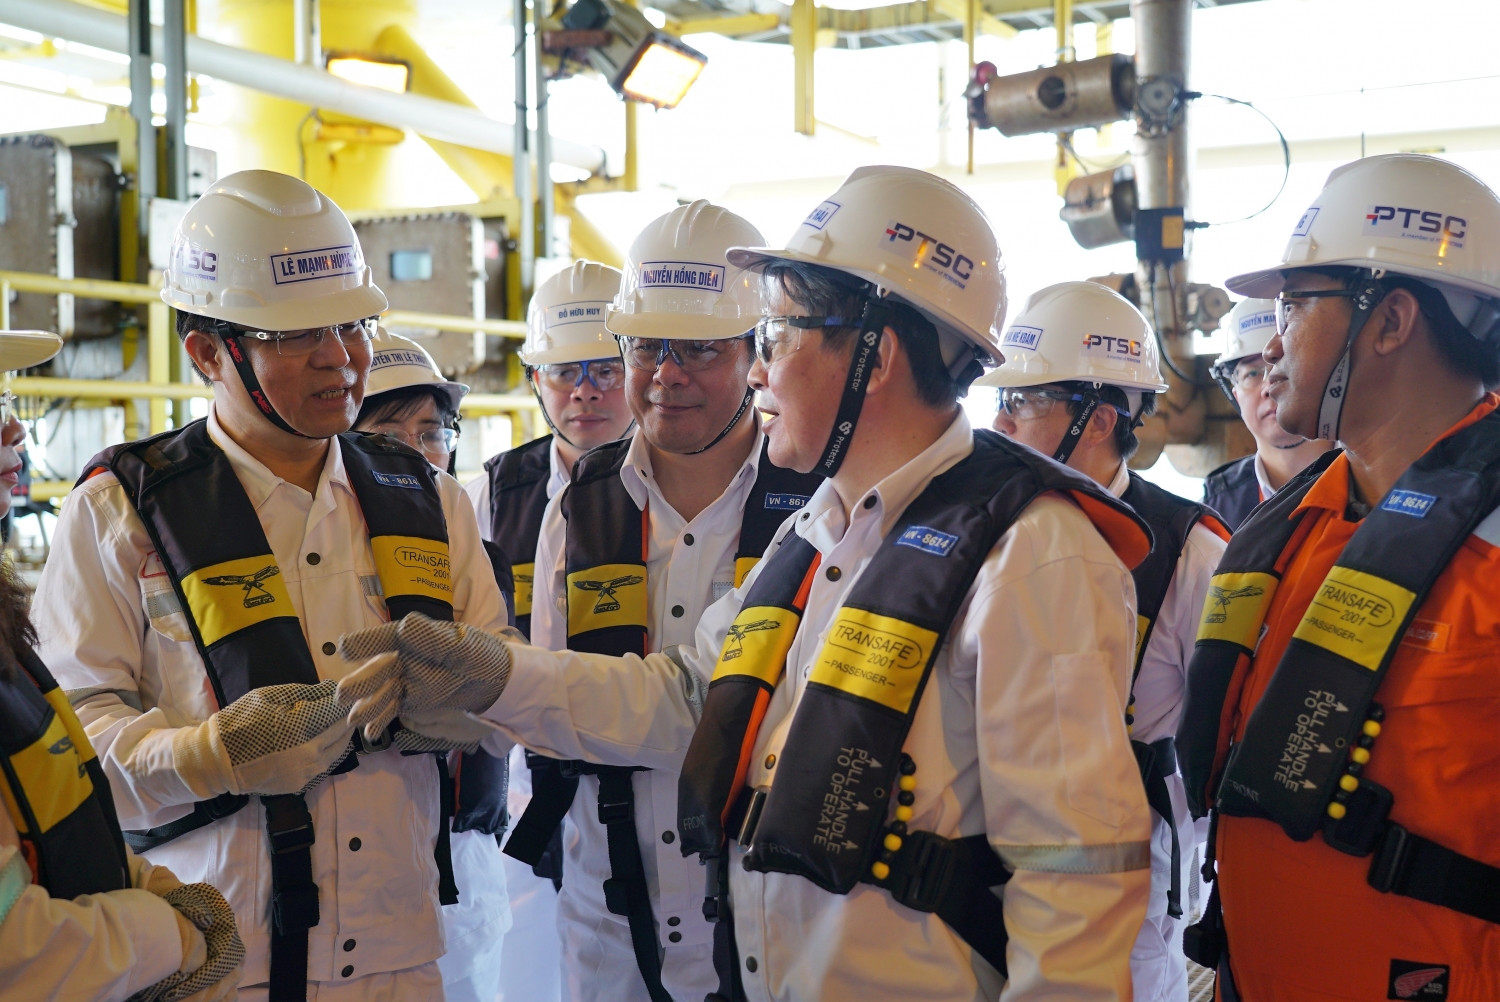 Phó Chủ tịch Quốc hội Nguyễn Đức Hải làm việc, thăm hỏi, động viên người lao động dầu khí tại mỏ Thăng Long - Đông Đô